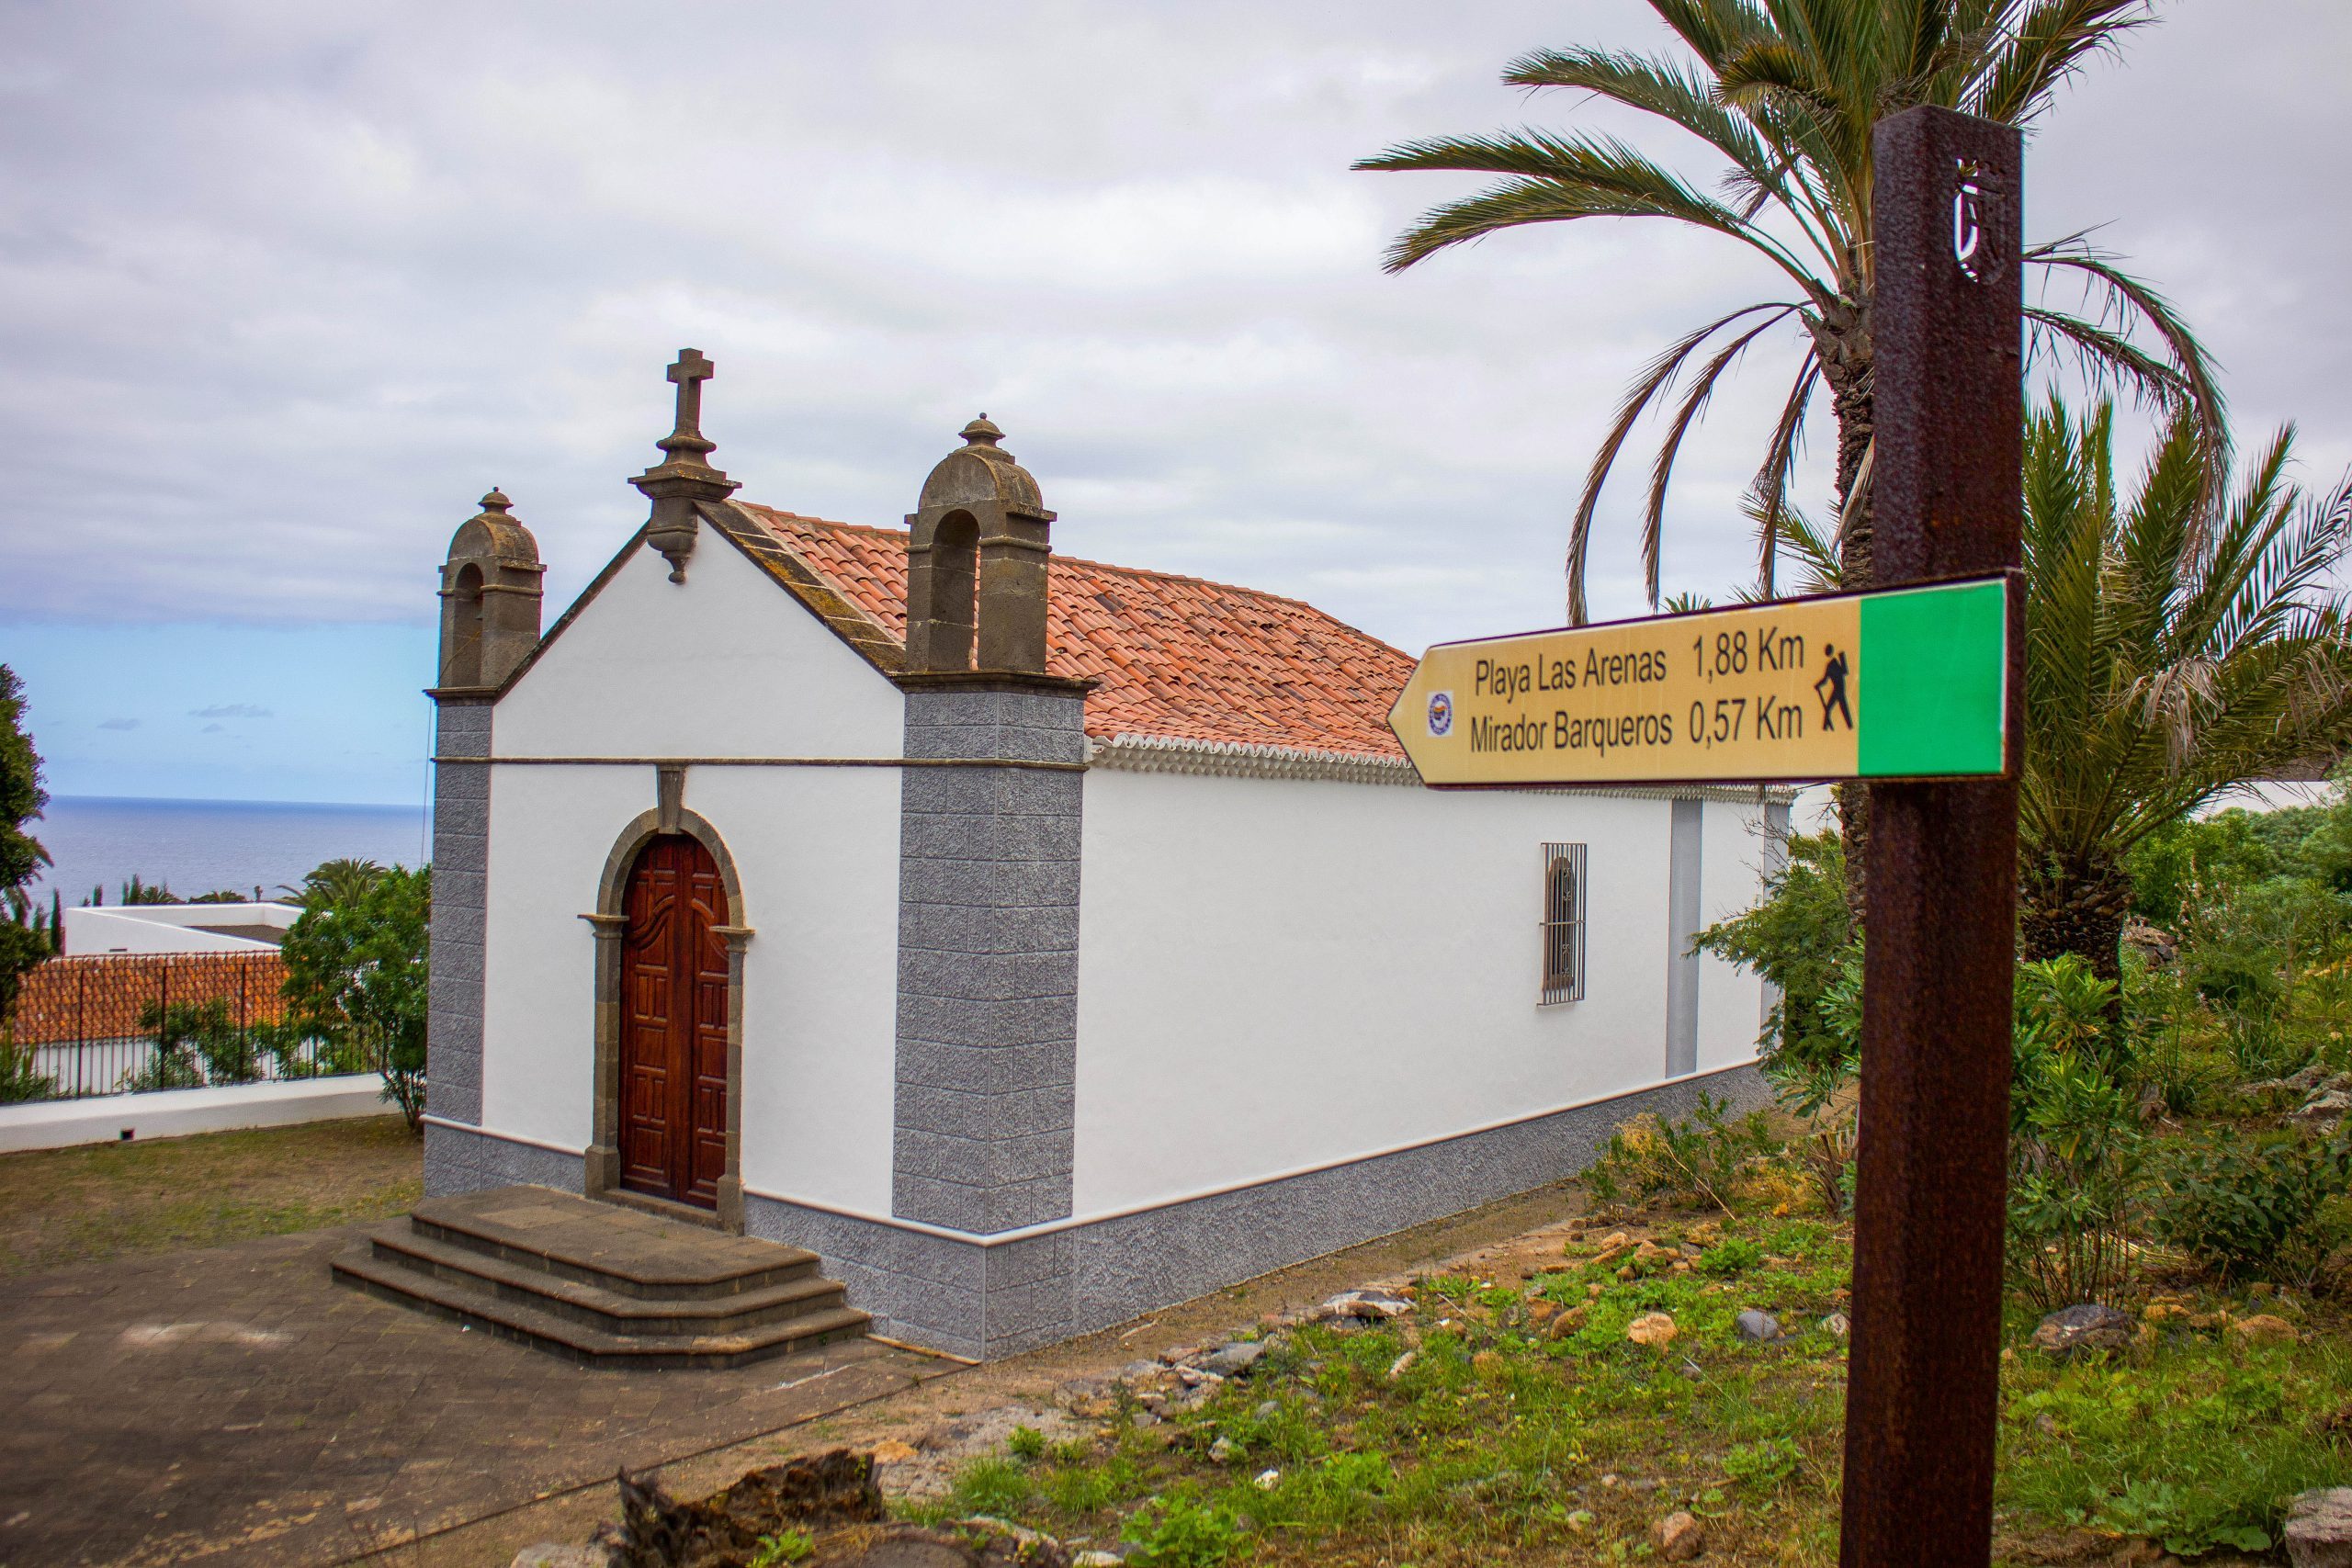 Foto de una iglesia y un cartel que señala la Playa Las Arenas y el mirador Barqueros